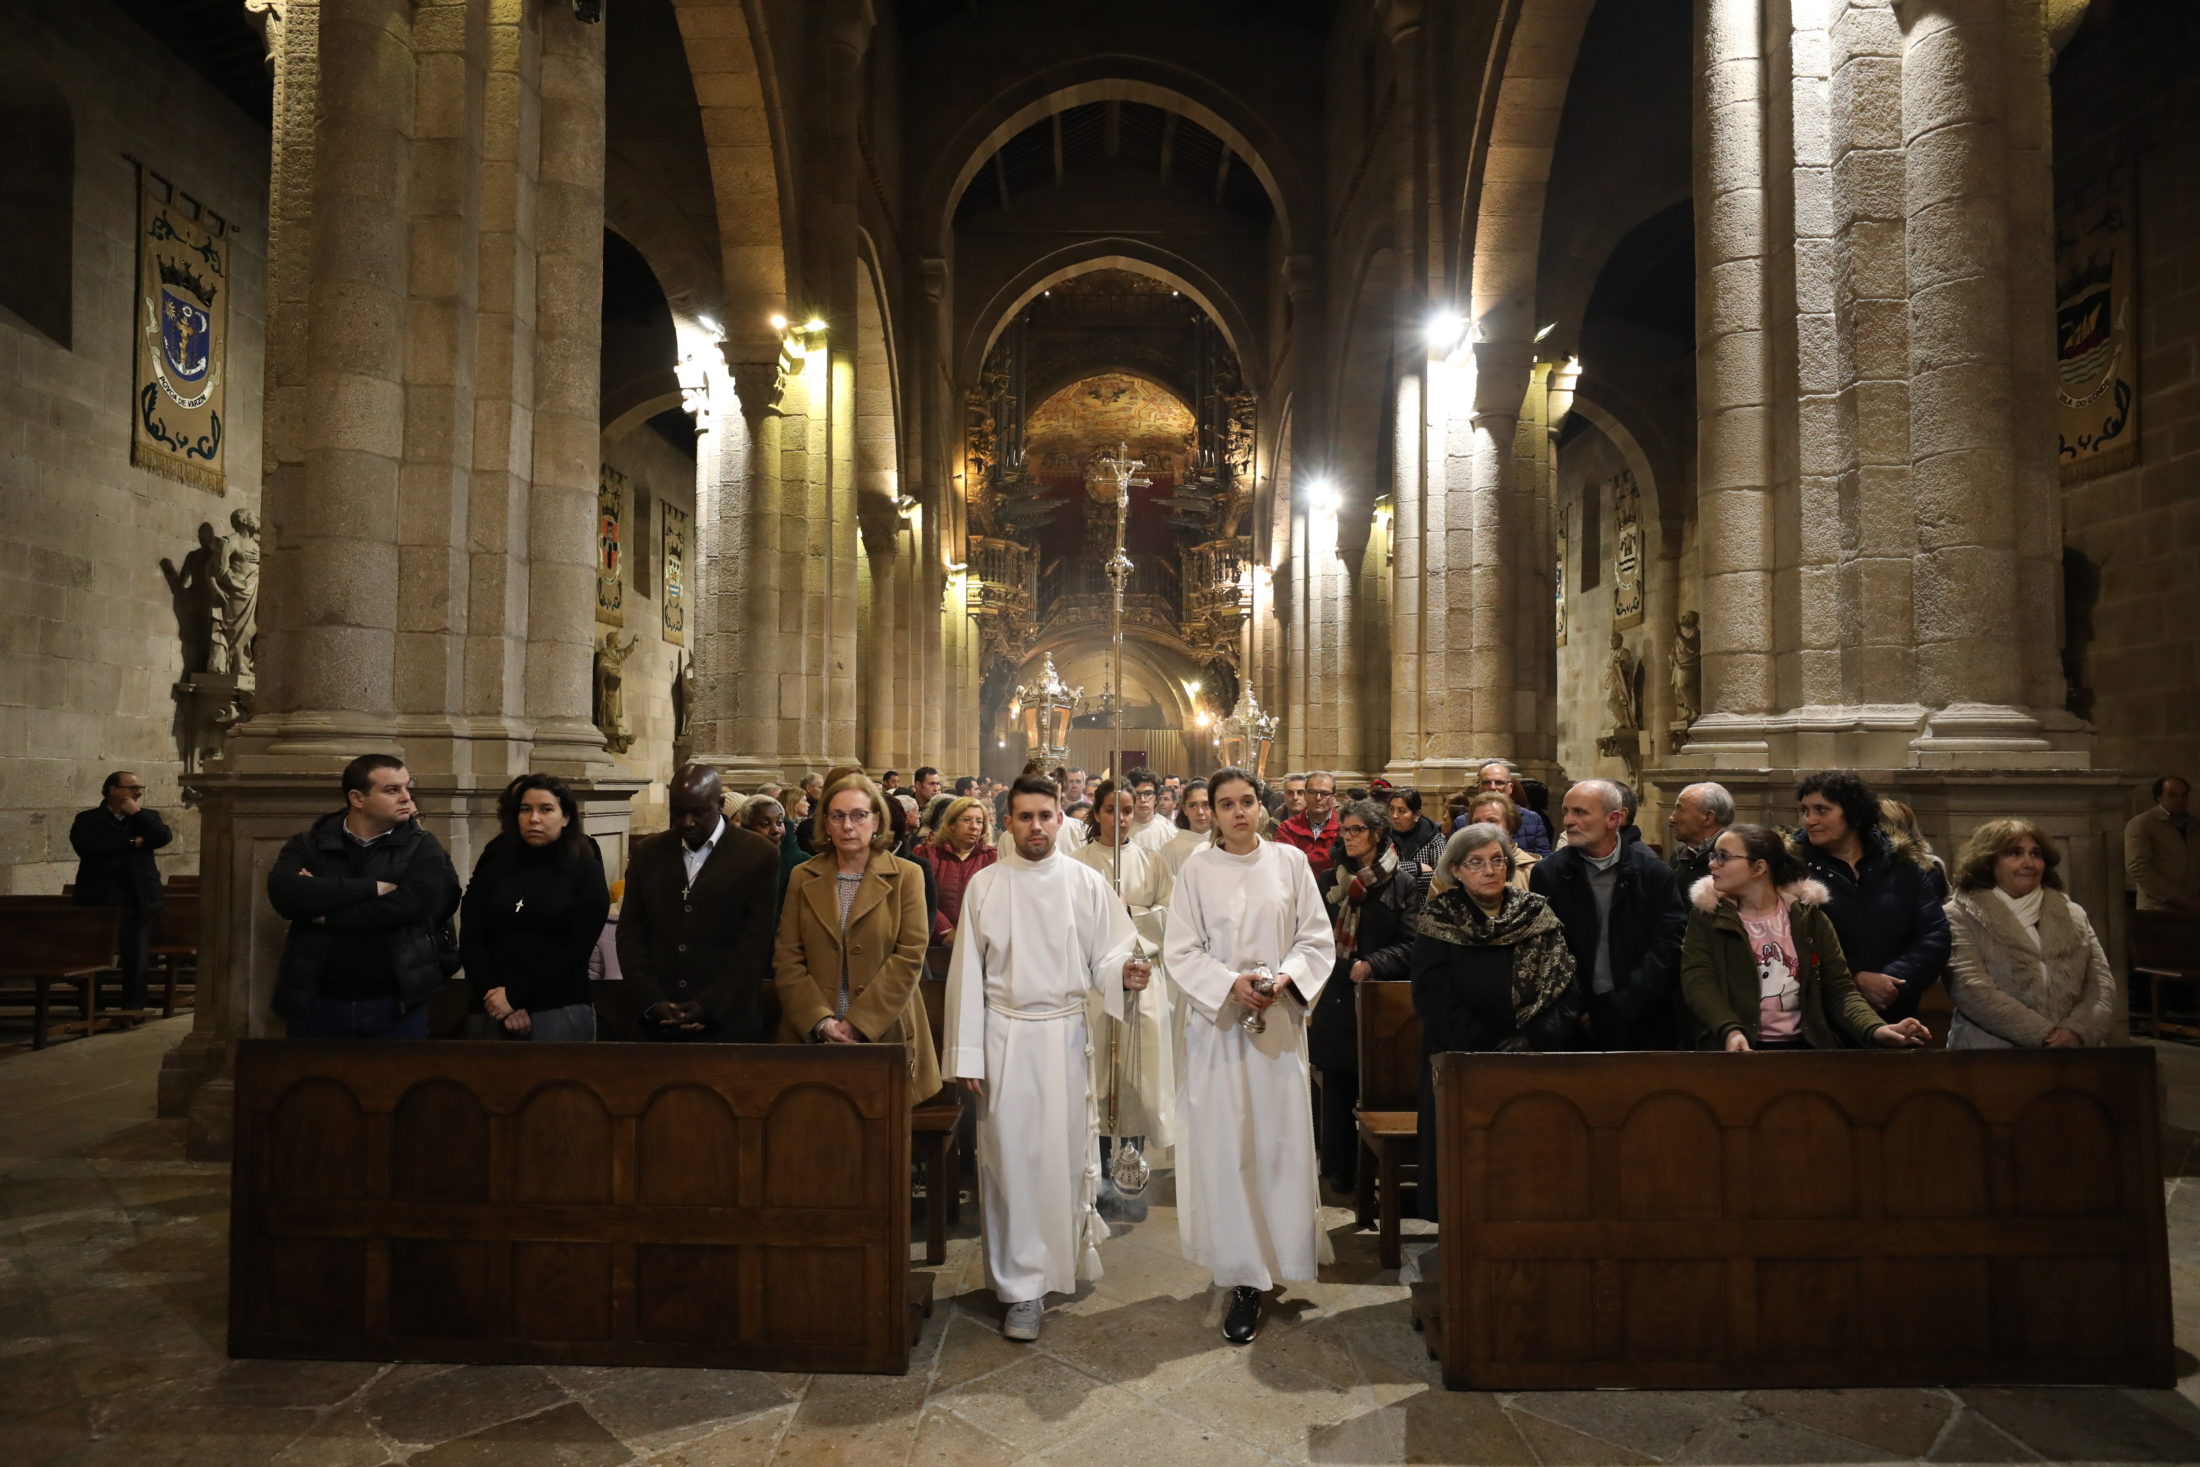 Arcebispo de Braga desafia os cristãos à transcendência e autenticidade nas ações